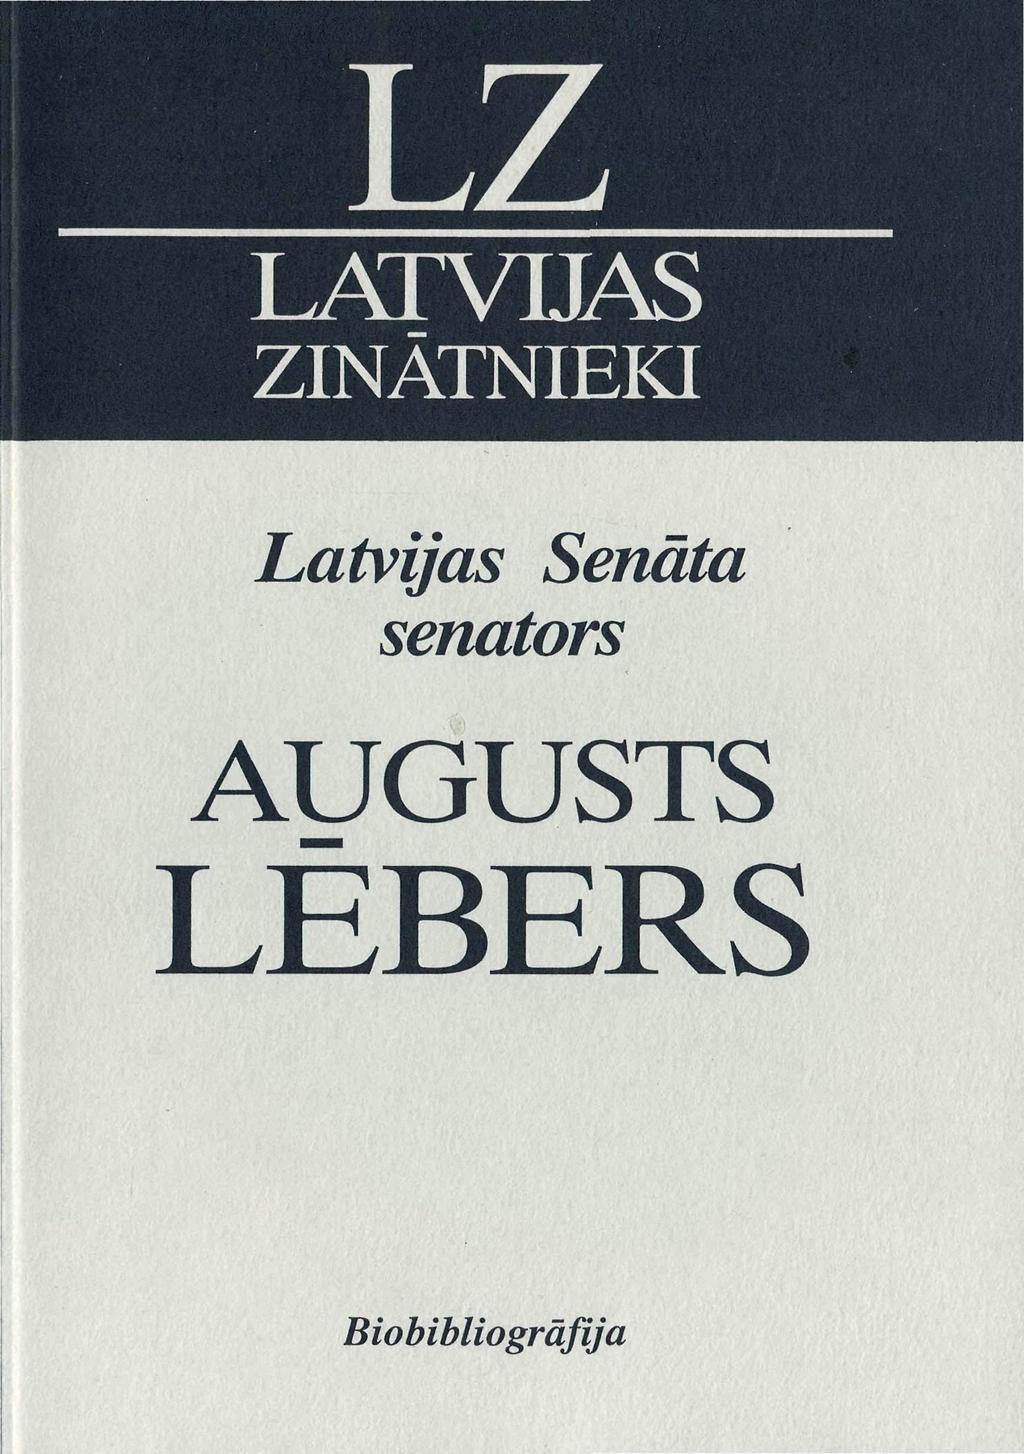 LATVIJAS ZINĀTNIEKI Latvijas Senāta